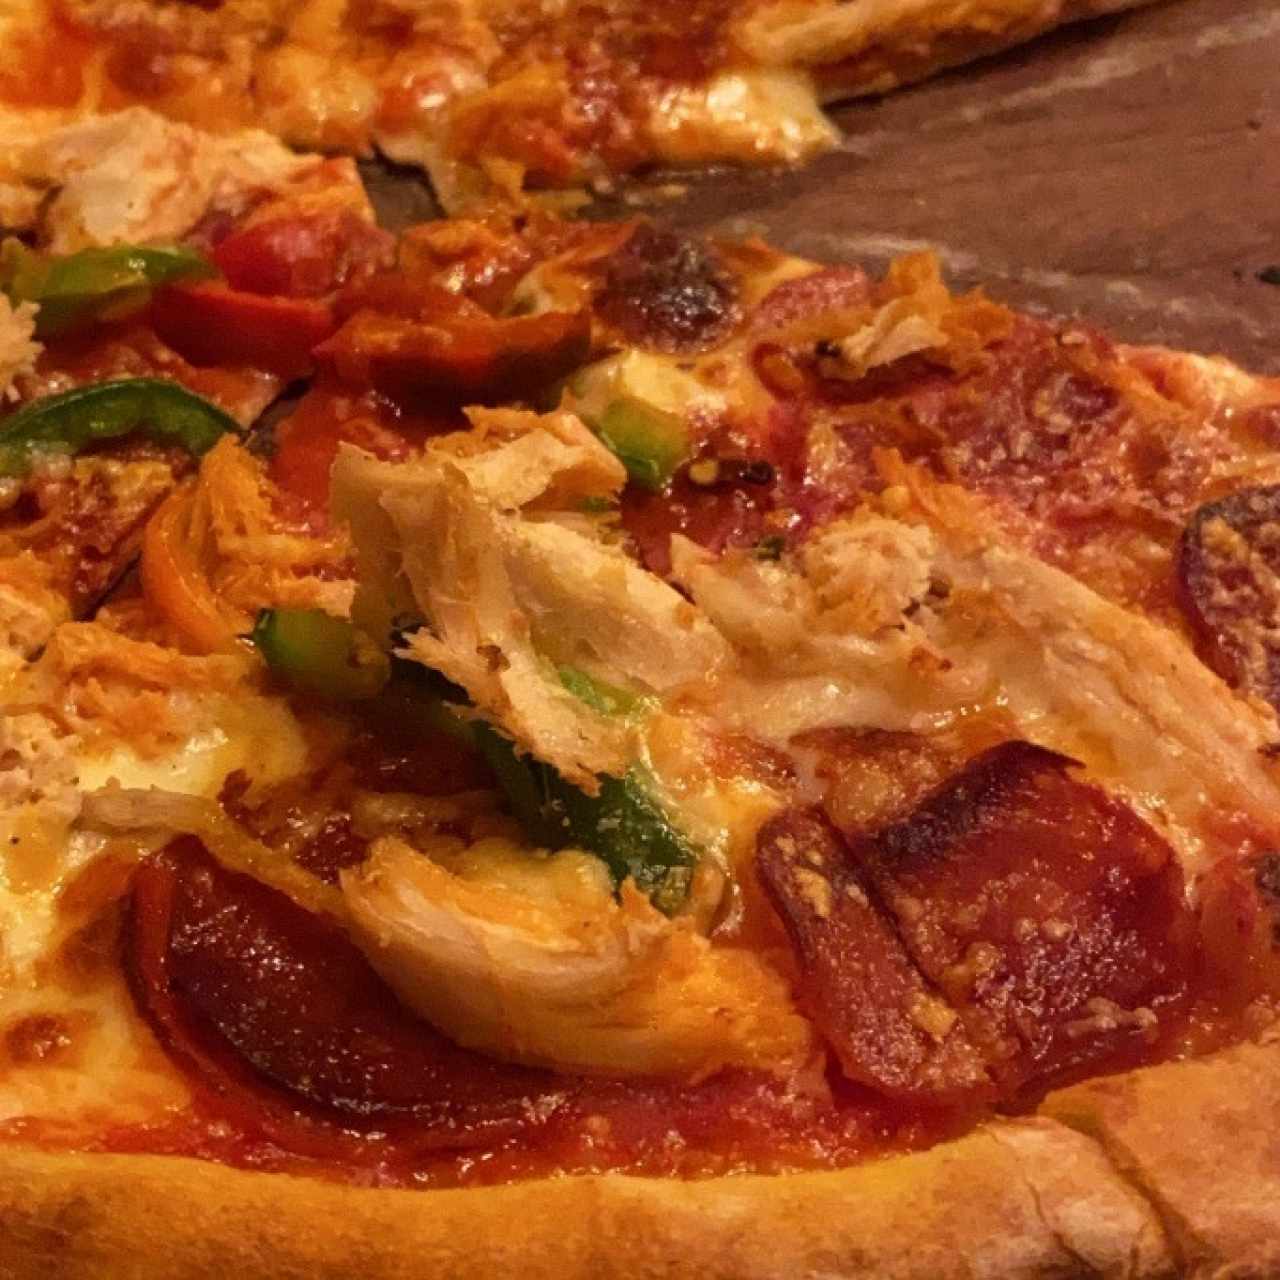 pizza de pollo y peperoni